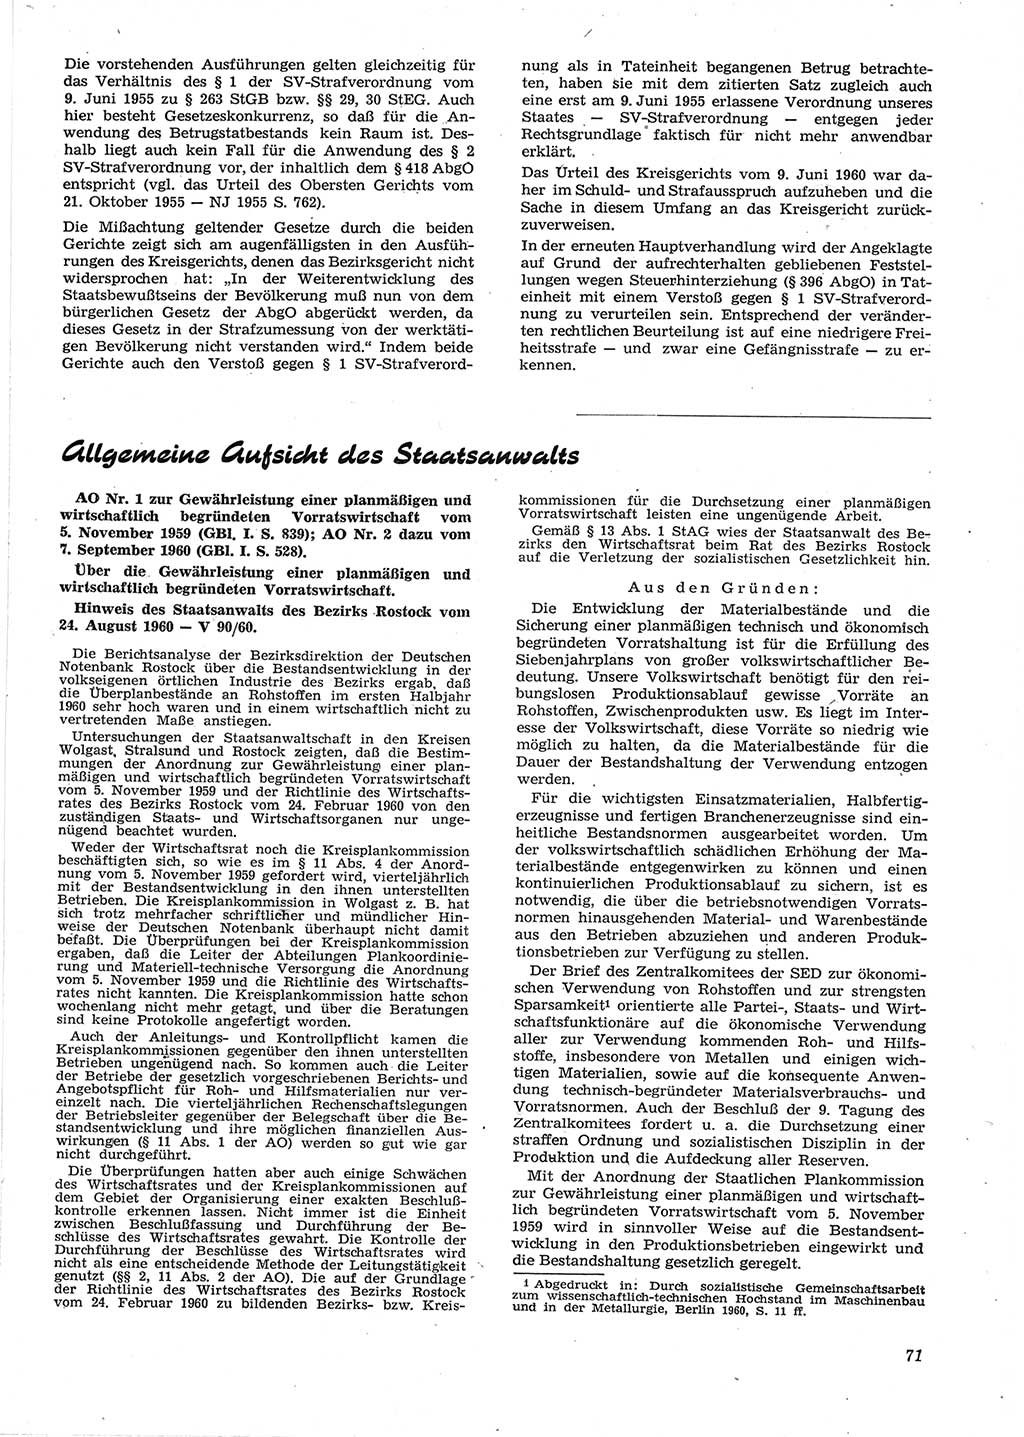 Neue Justiz (NJ), Zeitschrift für Recht und Rechtswissenschaft [Deutsche Demokratische Republik (DDR)], 15. Jahrgang 1961, Seite 71 (NJ DDR 1961, S. 71)